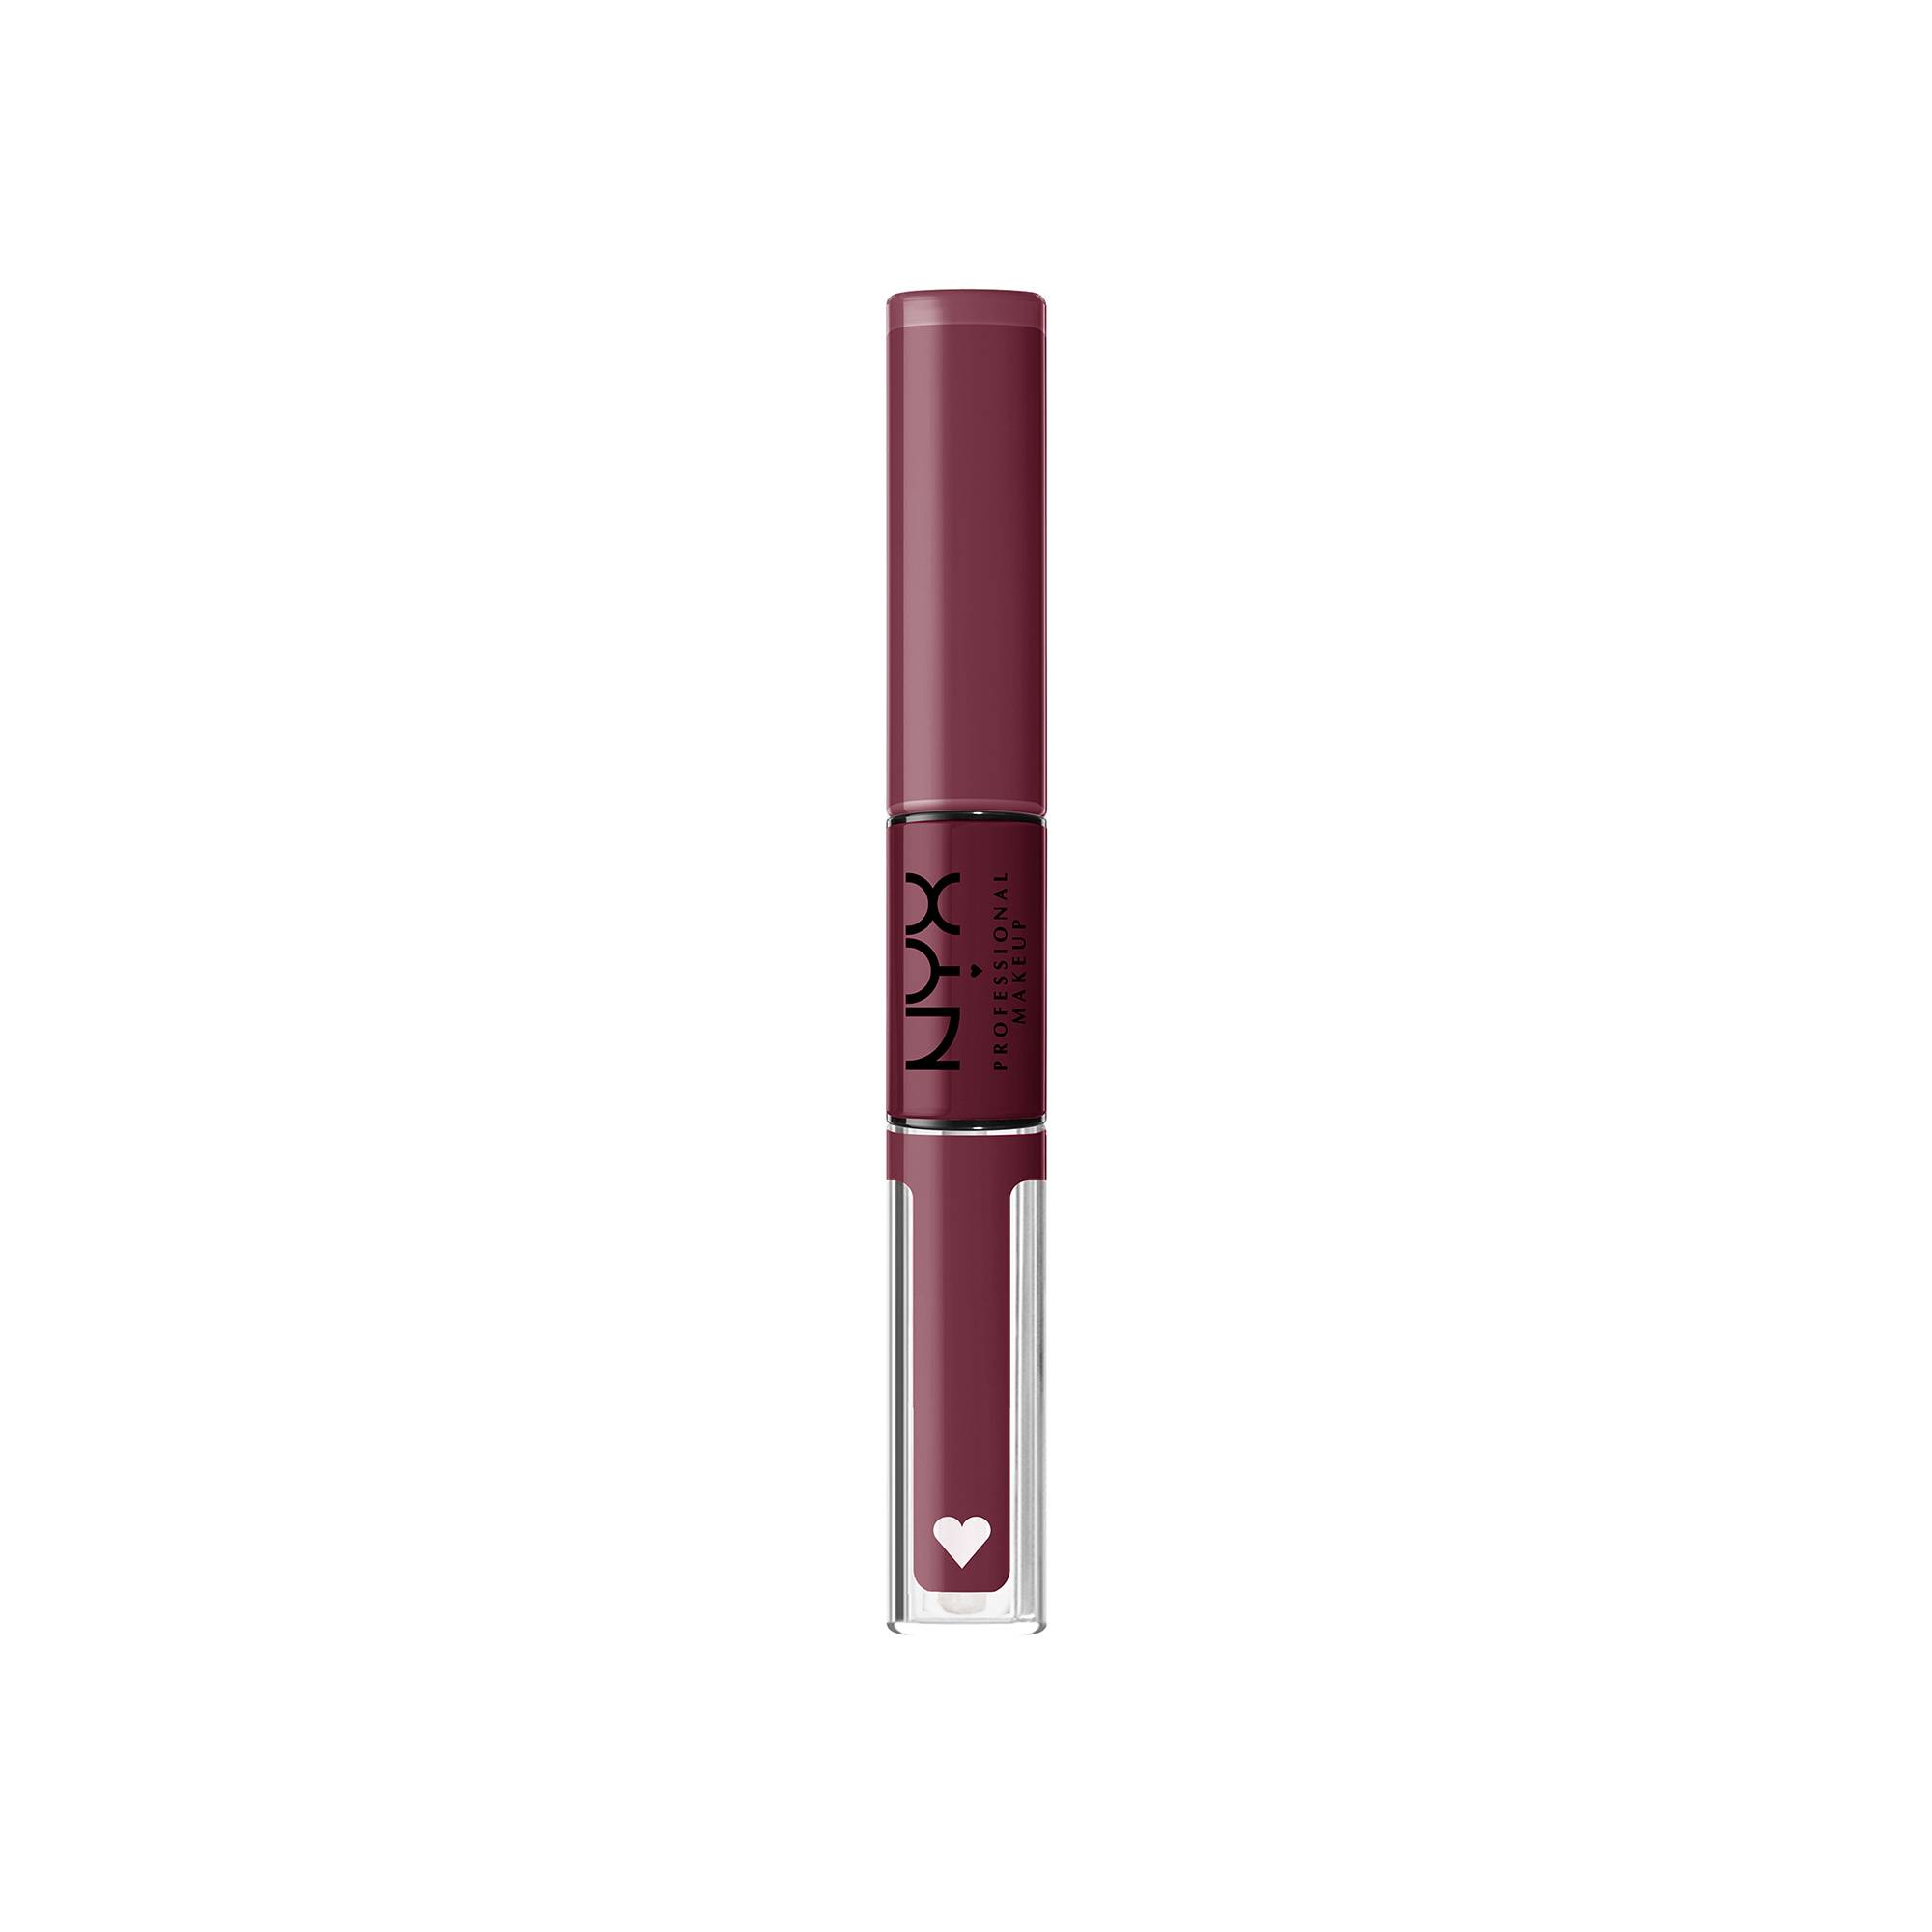 Rouge à lèvres Shine Loud - Never Basic de la marque NYX Professional Makeup - 1